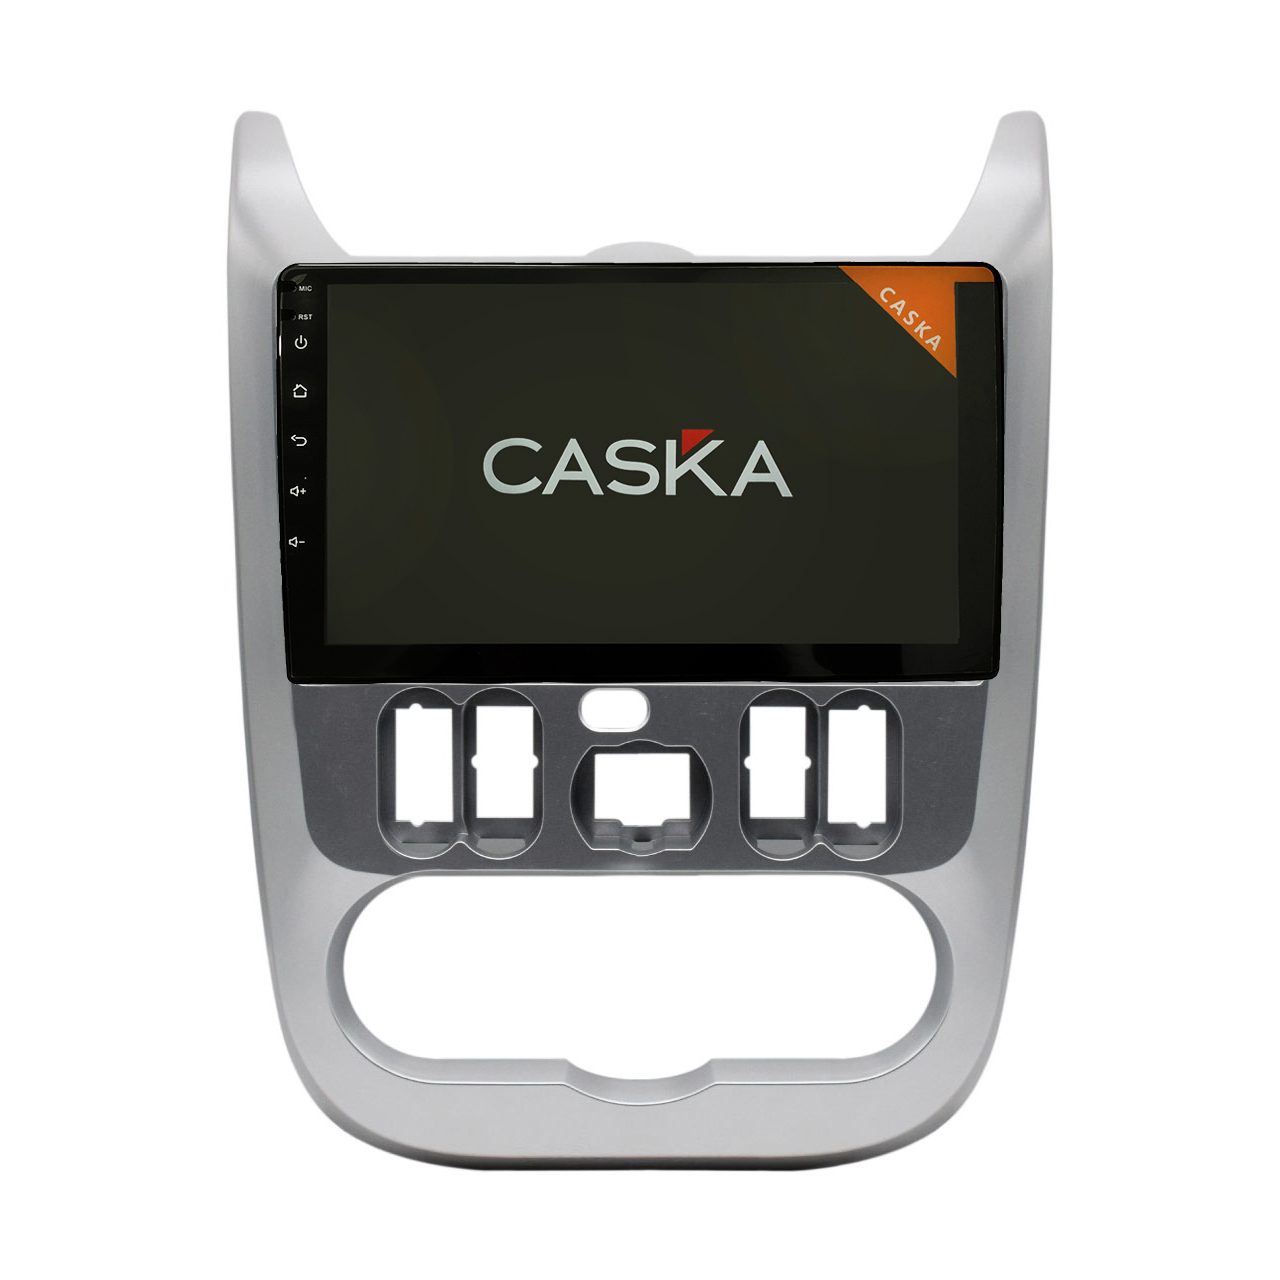 پخش کننده تصویری خودرو کاسکا مدل  20 مناسب برای ساندرو